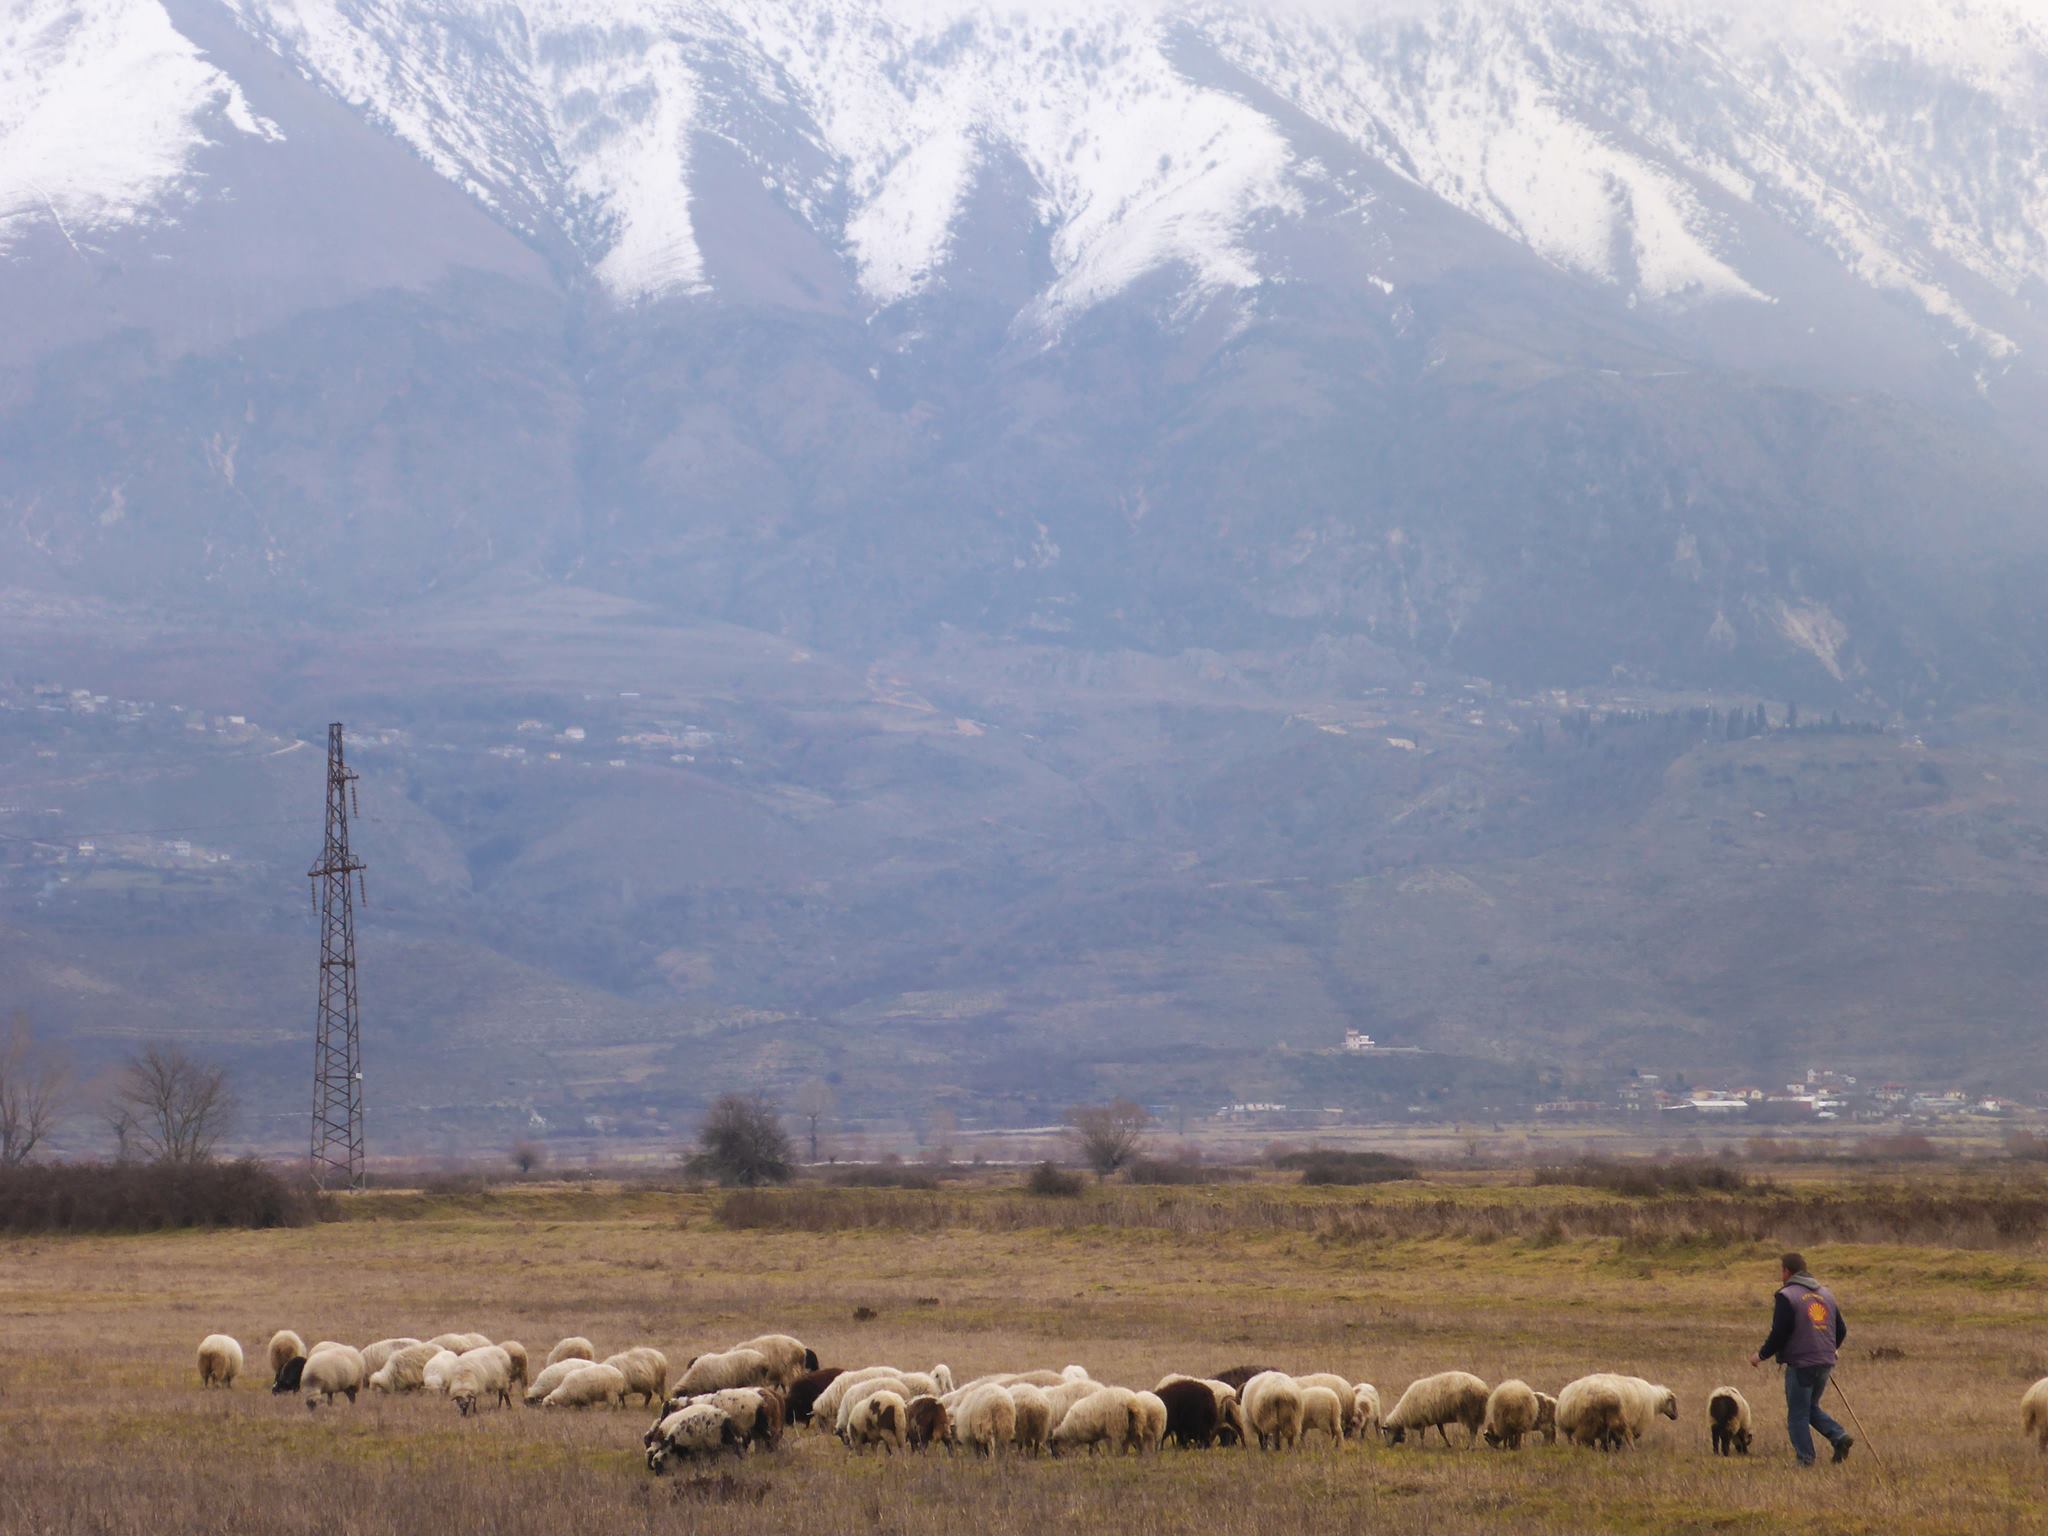 De nombreux bergers et leurs moutons dans la vallée